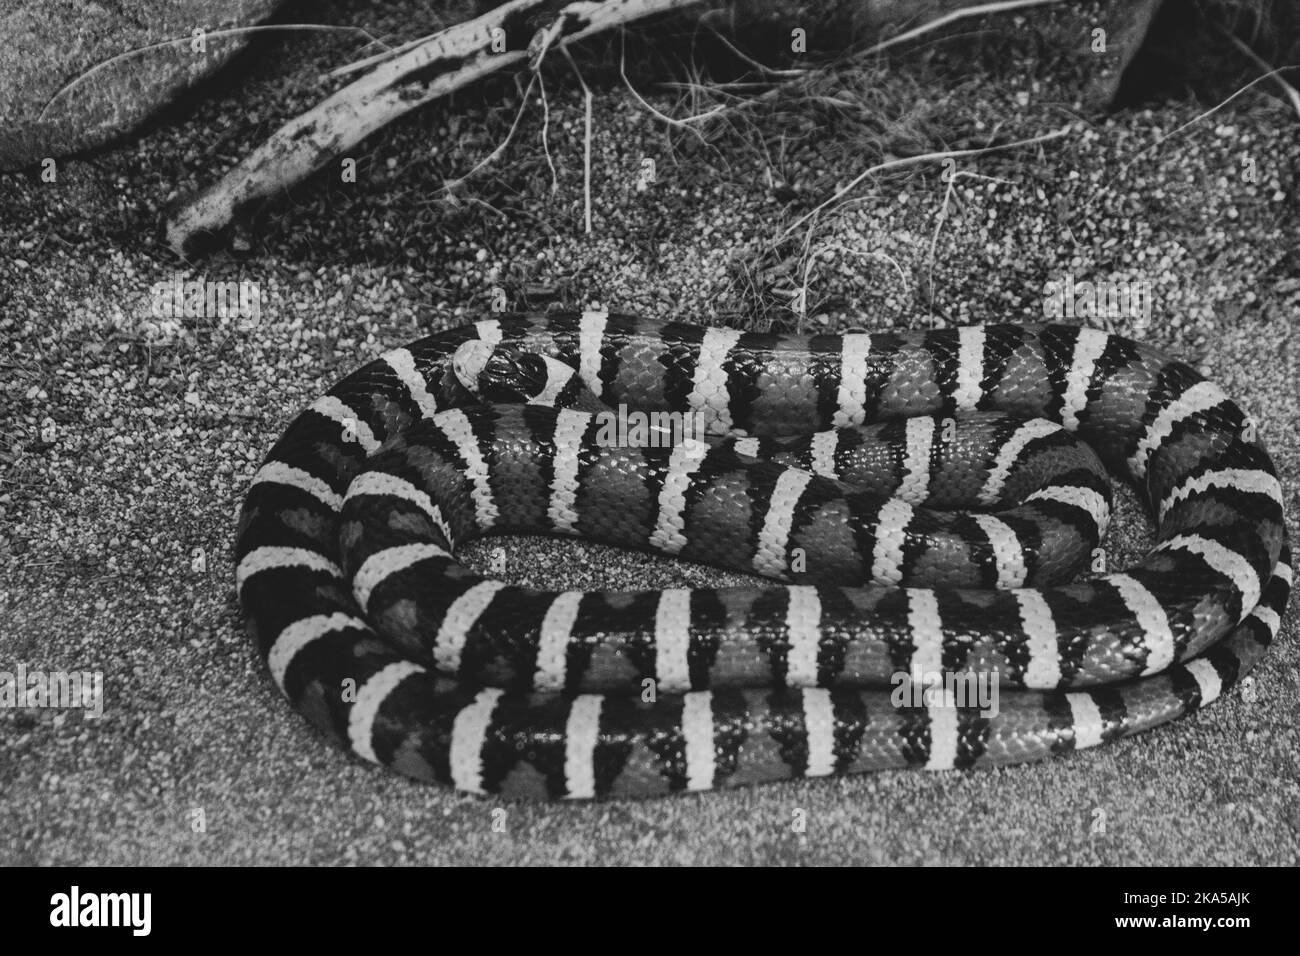 Eine Königsschlange aus dem Sonoranergebirge, die sich in einem Gehege zusammengerollt hat. Das Bild wird in Schwarzweiß dargestellt, um farbige Streifen hervorzuheben. Stockfoto